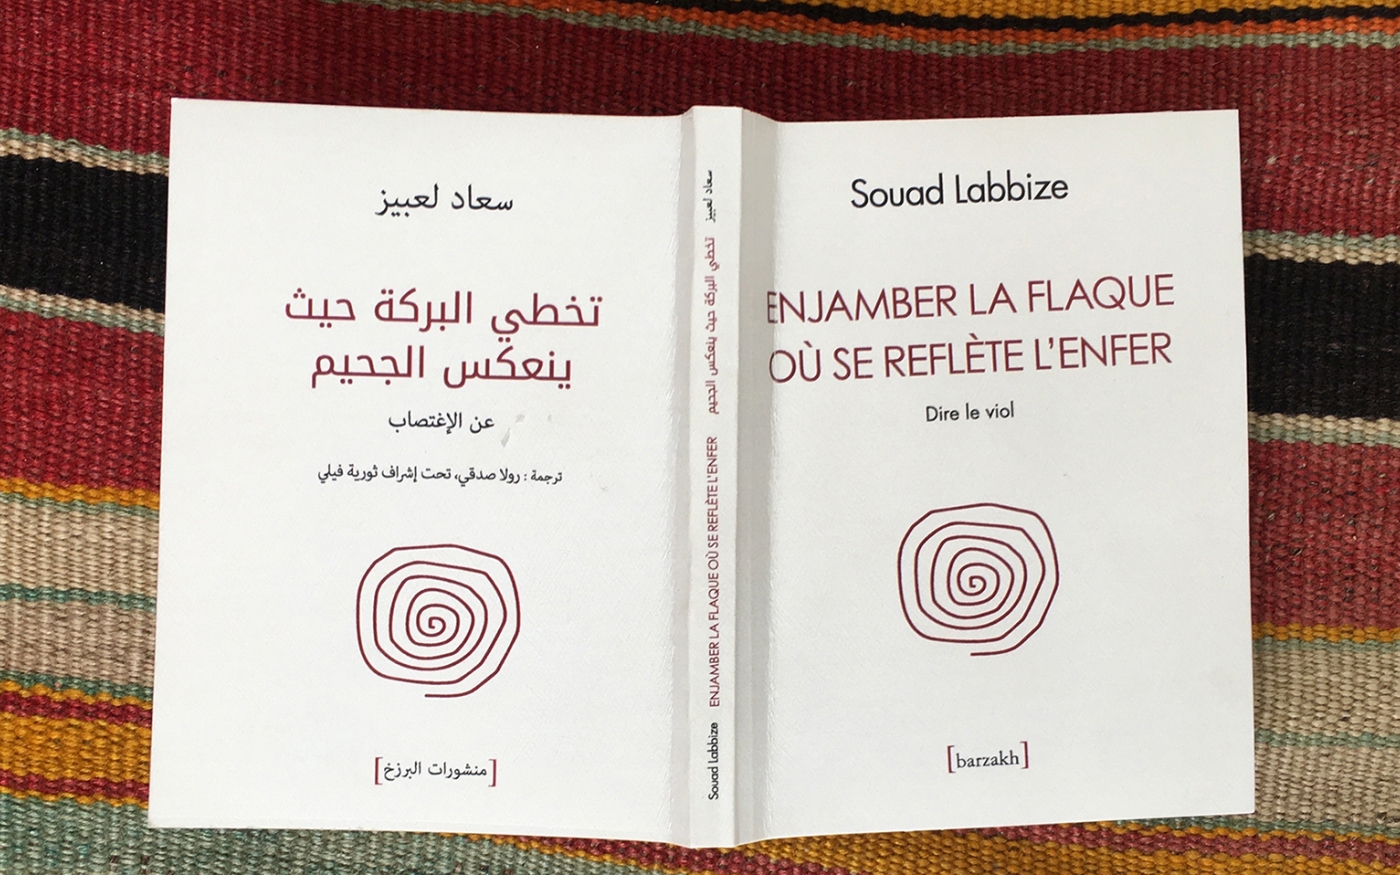 Enjamber la flaque où se reflète l'enfer, de Souad Labbize, est publié en français et en arabe dans un même livre (Daikha Dridi)